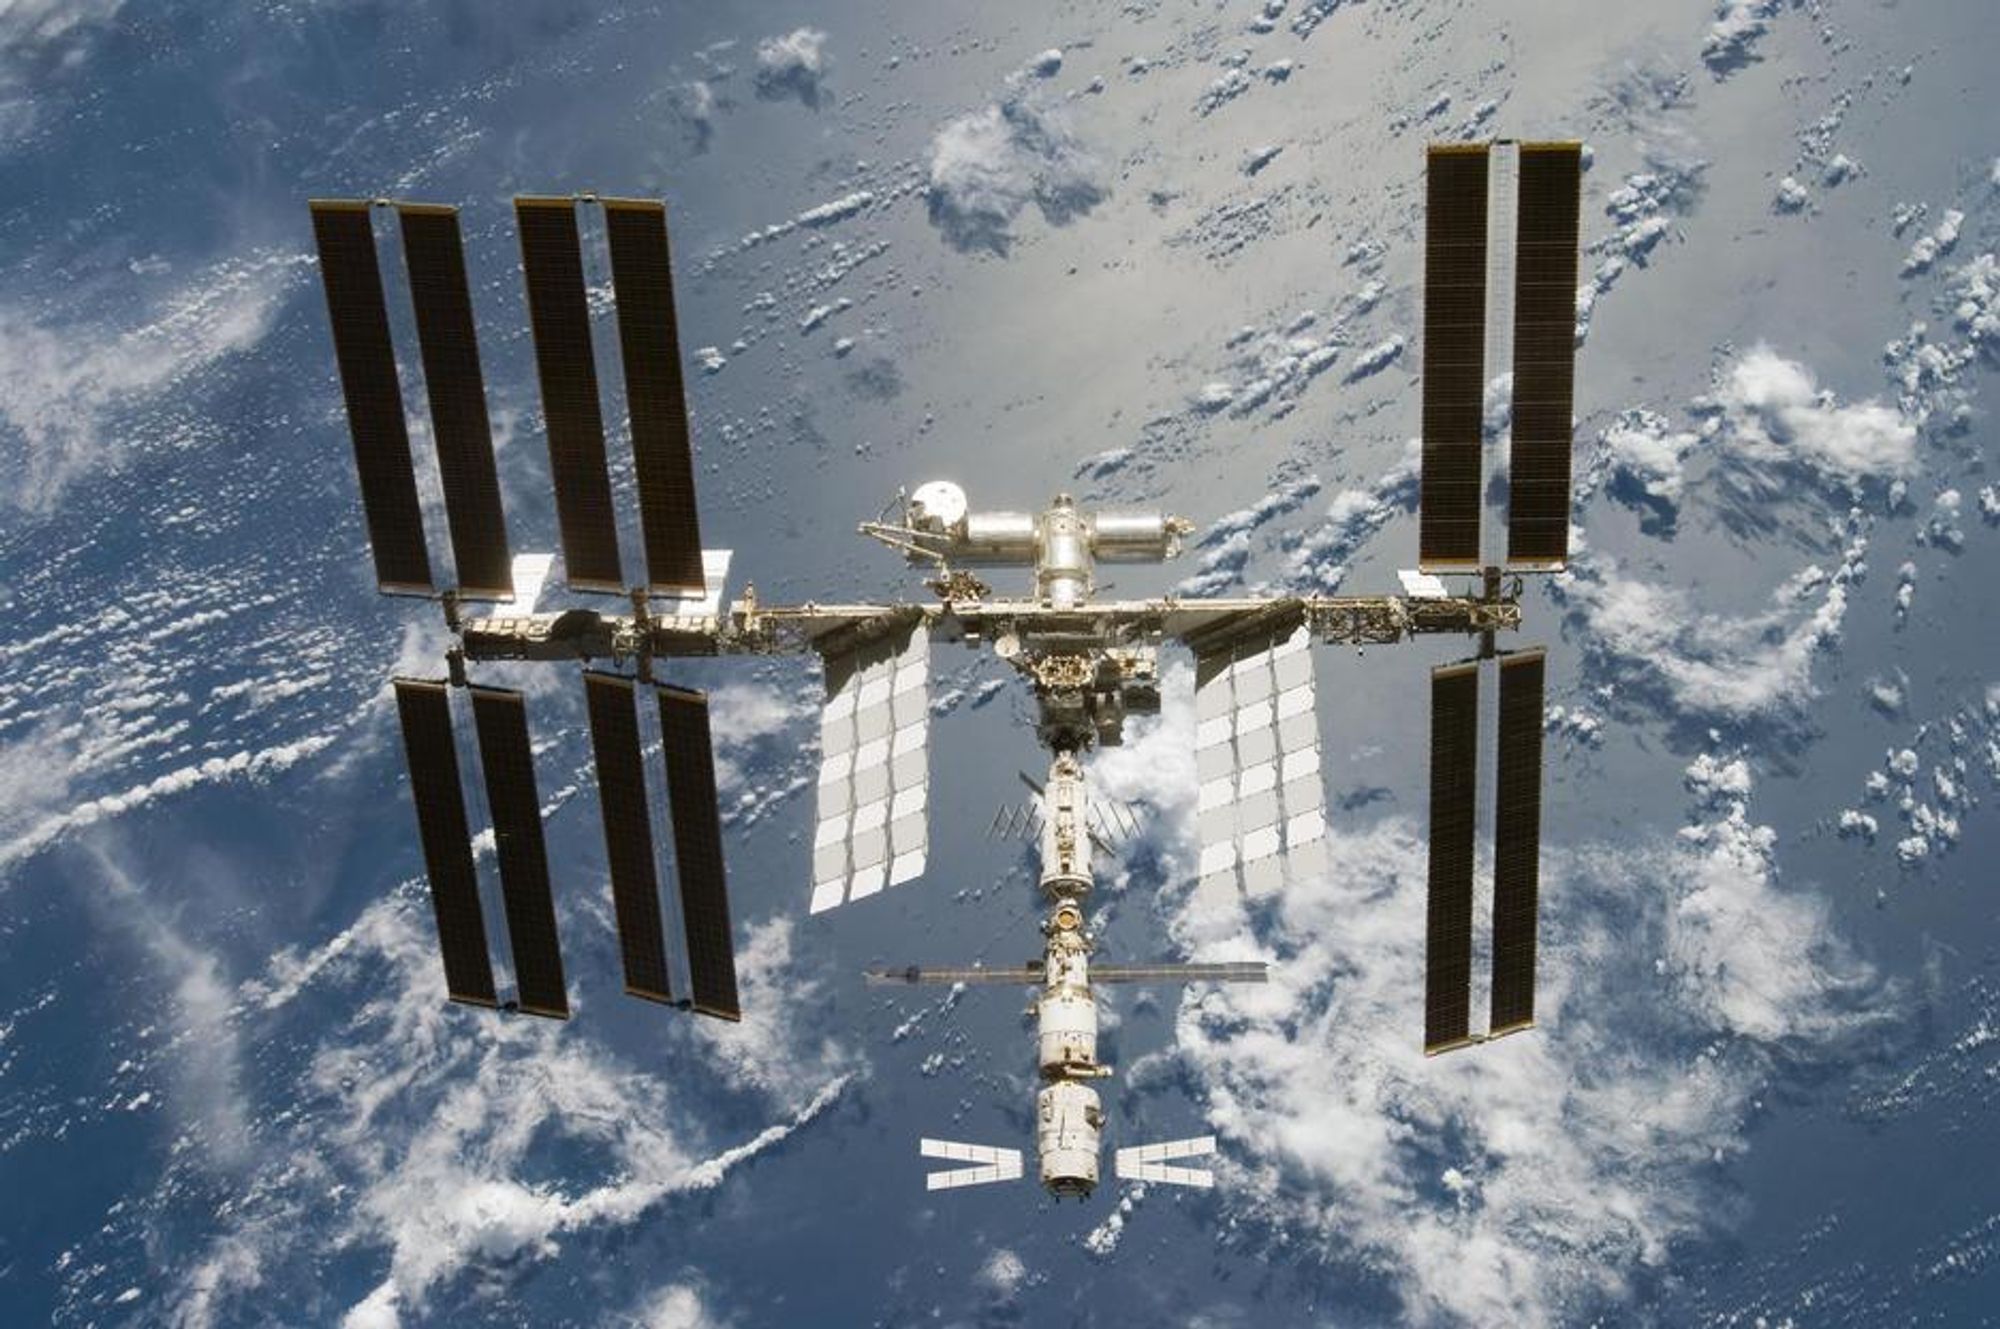 Den internasjonale romstasjonen ISS feirer tiårsjubileum torsdag. Den sirkulerer rundt jorden med en hastighet på nærmere 28 000 km\t.